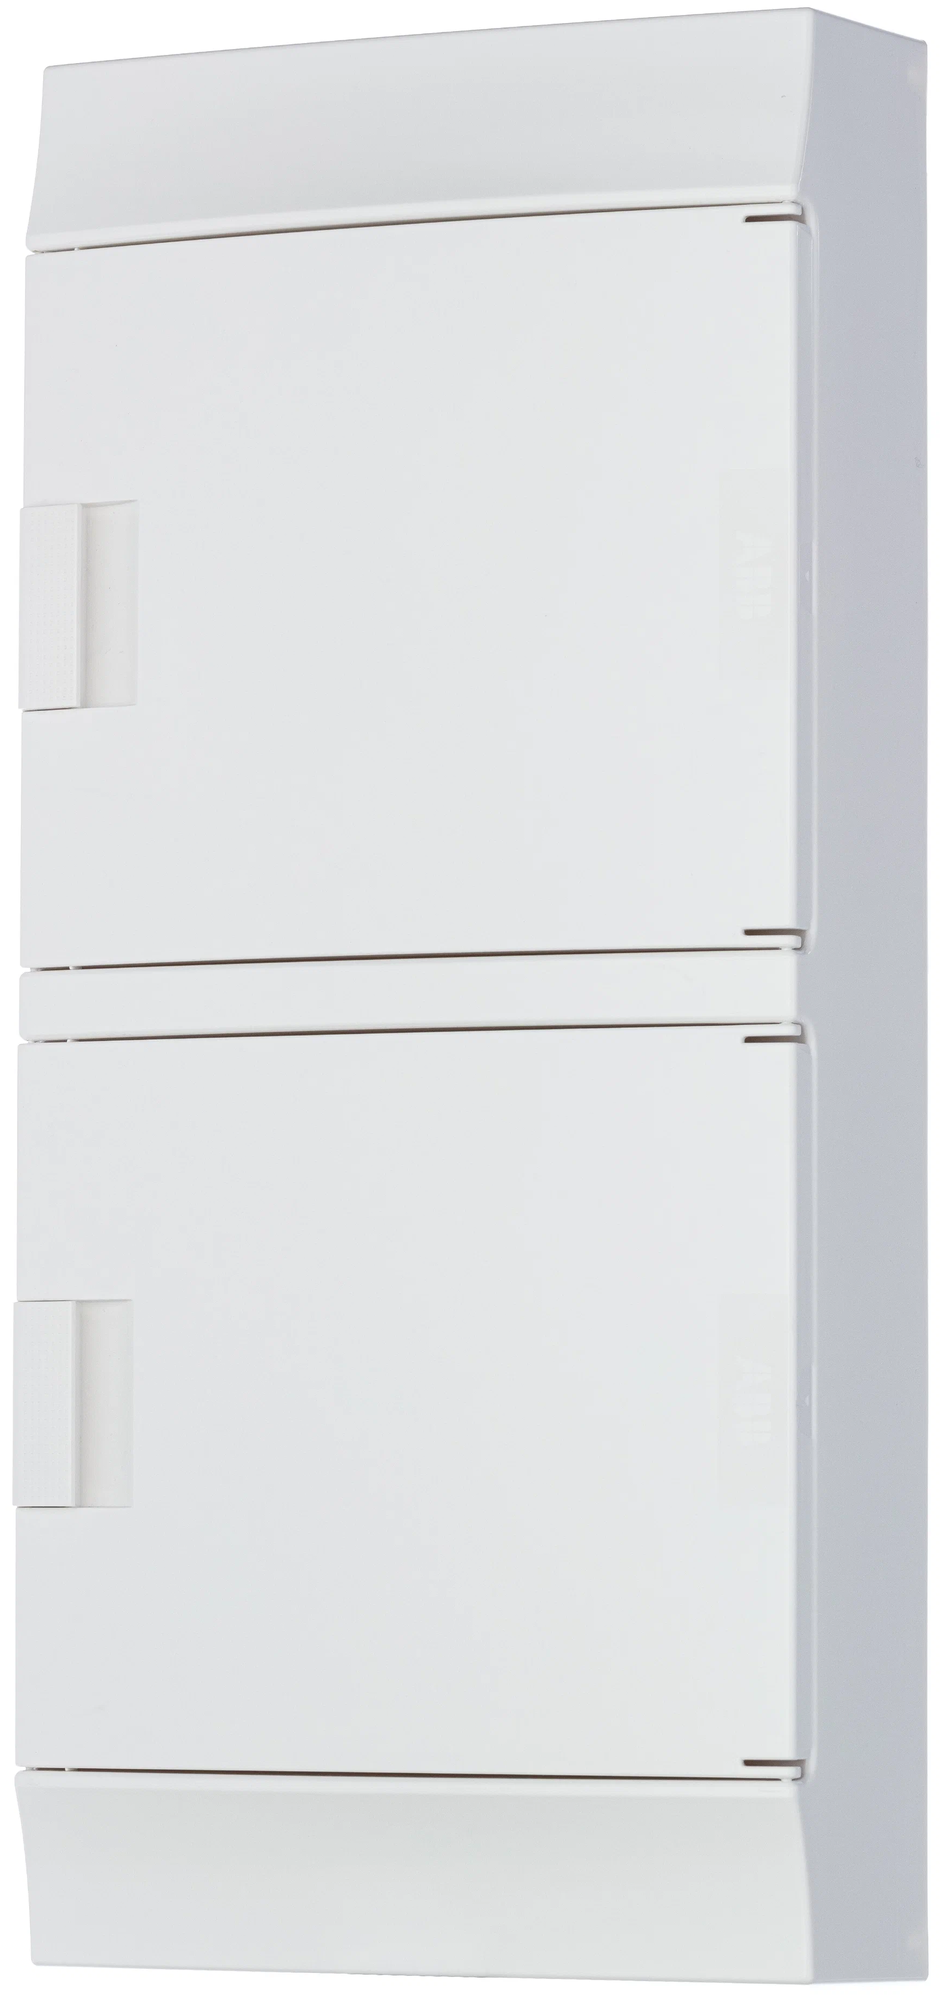 Бокс настенный ABB Mistral41 48М модулей (4x12) непрозрачная дверь с клеммным блоком 1SLM004102A3108